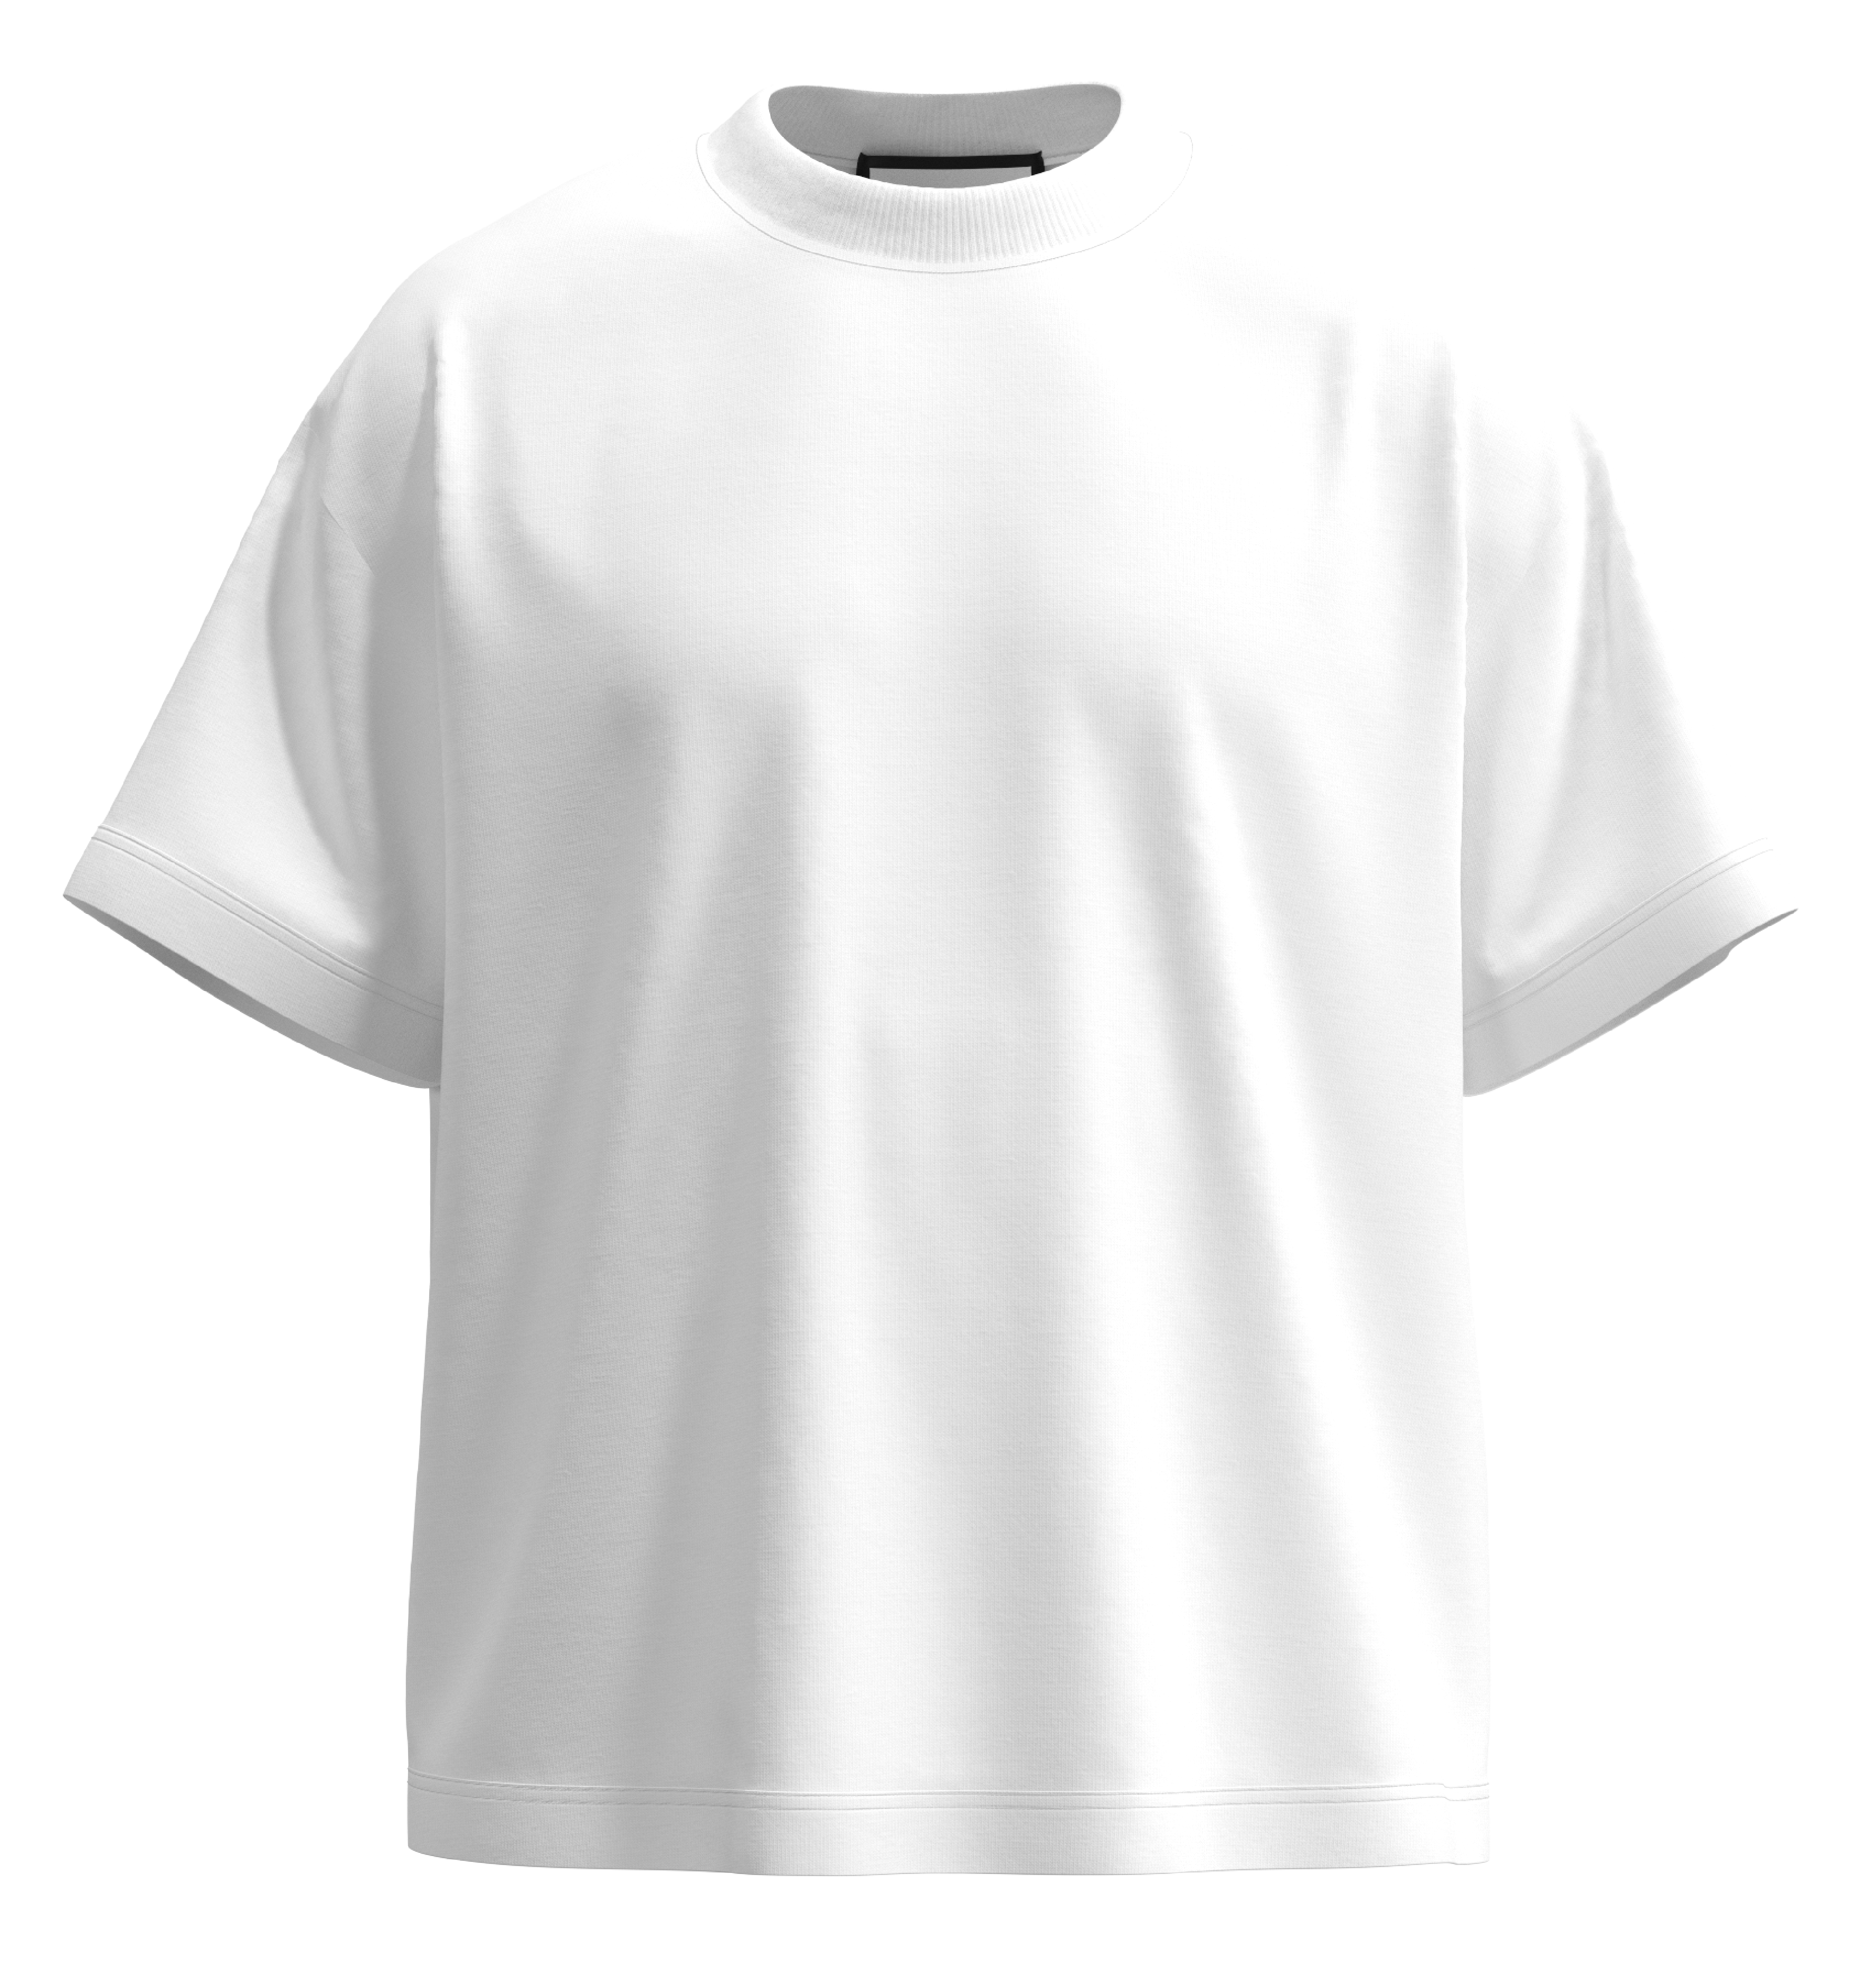 V3.0 Premium Blank T-Shirt (White)